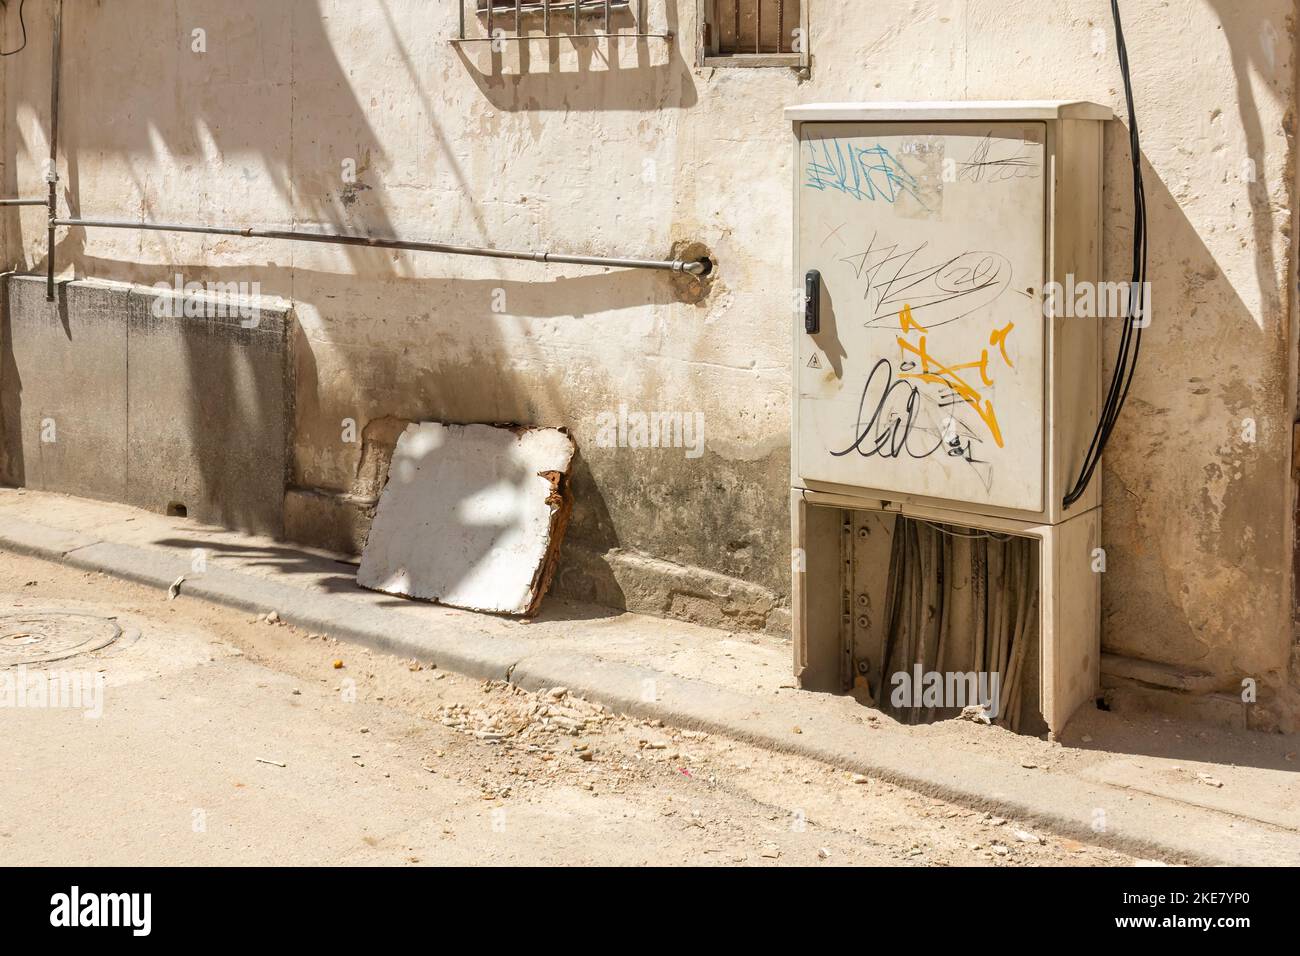 Caja de control eléctrico con graffiti en una calle sucia y pared lateral del edificio. Foto de stock